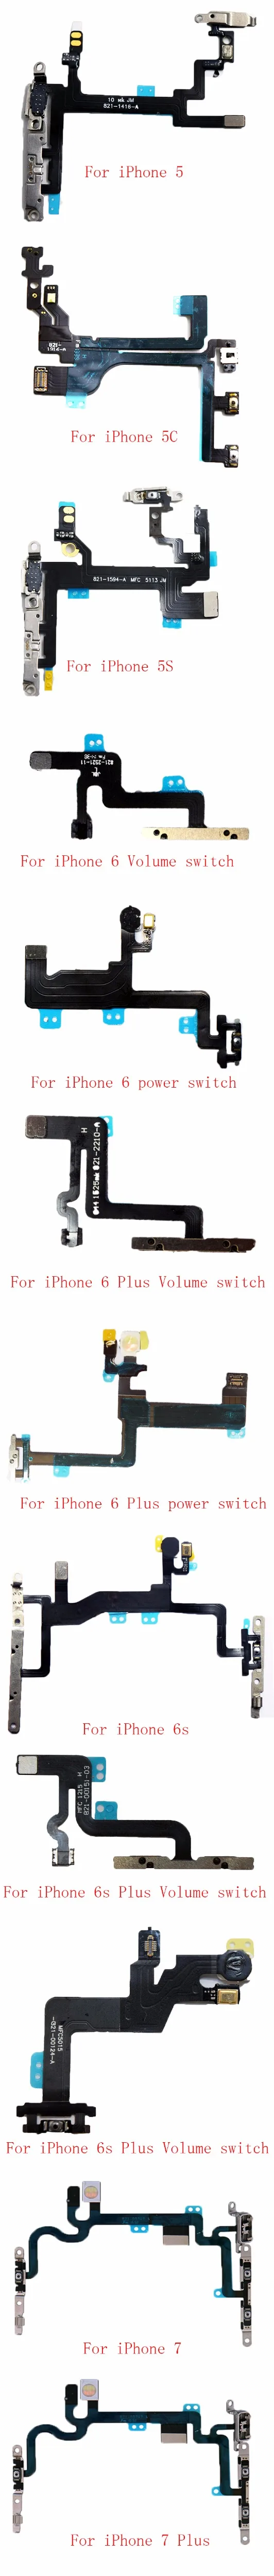 1 шт. для iPhone 5 5c 5S 6 6s 6 Plus 7 7 Plus кнопка включения выключения питания гибкий кабель с разъемом для выключения звука